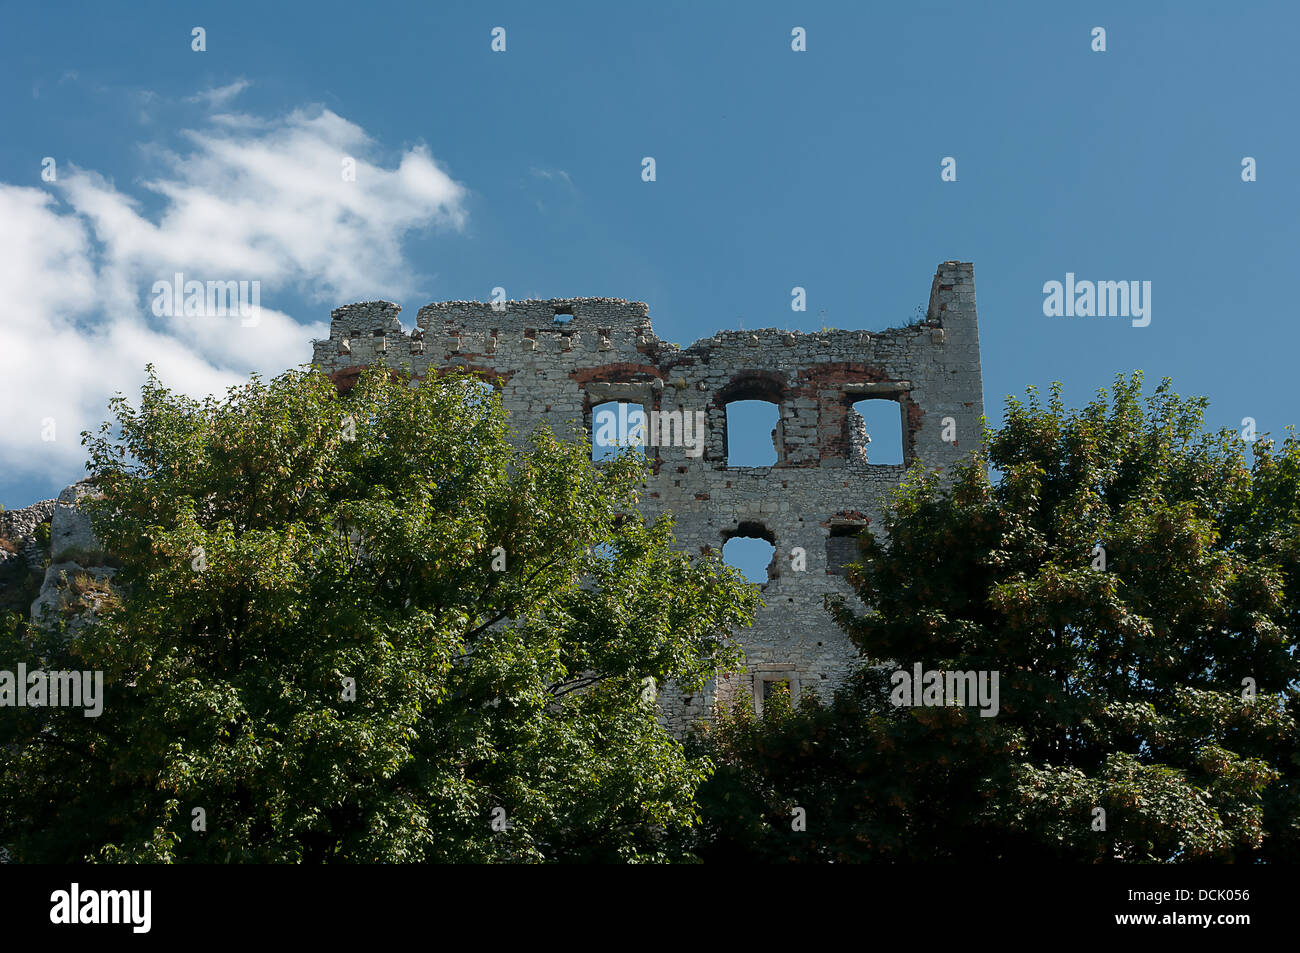 Les ruines d'un château médiéval d'Ogrodzieniec Banque D'Images